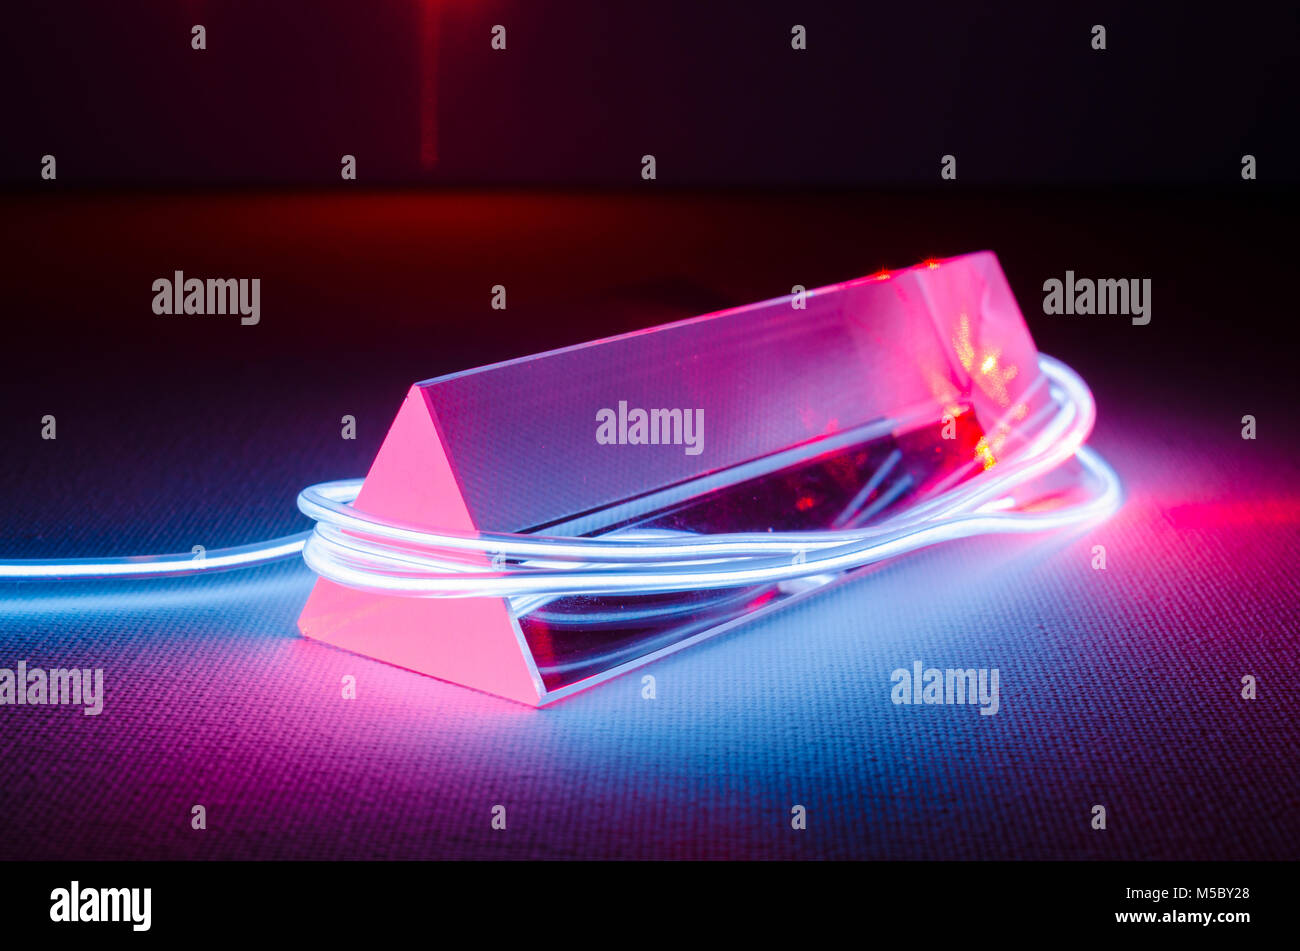 Un estudio bodegón fotografía de un prisma de vidrio triangular con luces de neón en Blue-Gray abstracta, y la luz roja del láser introduciendo el extremo del prisma Foto de stock